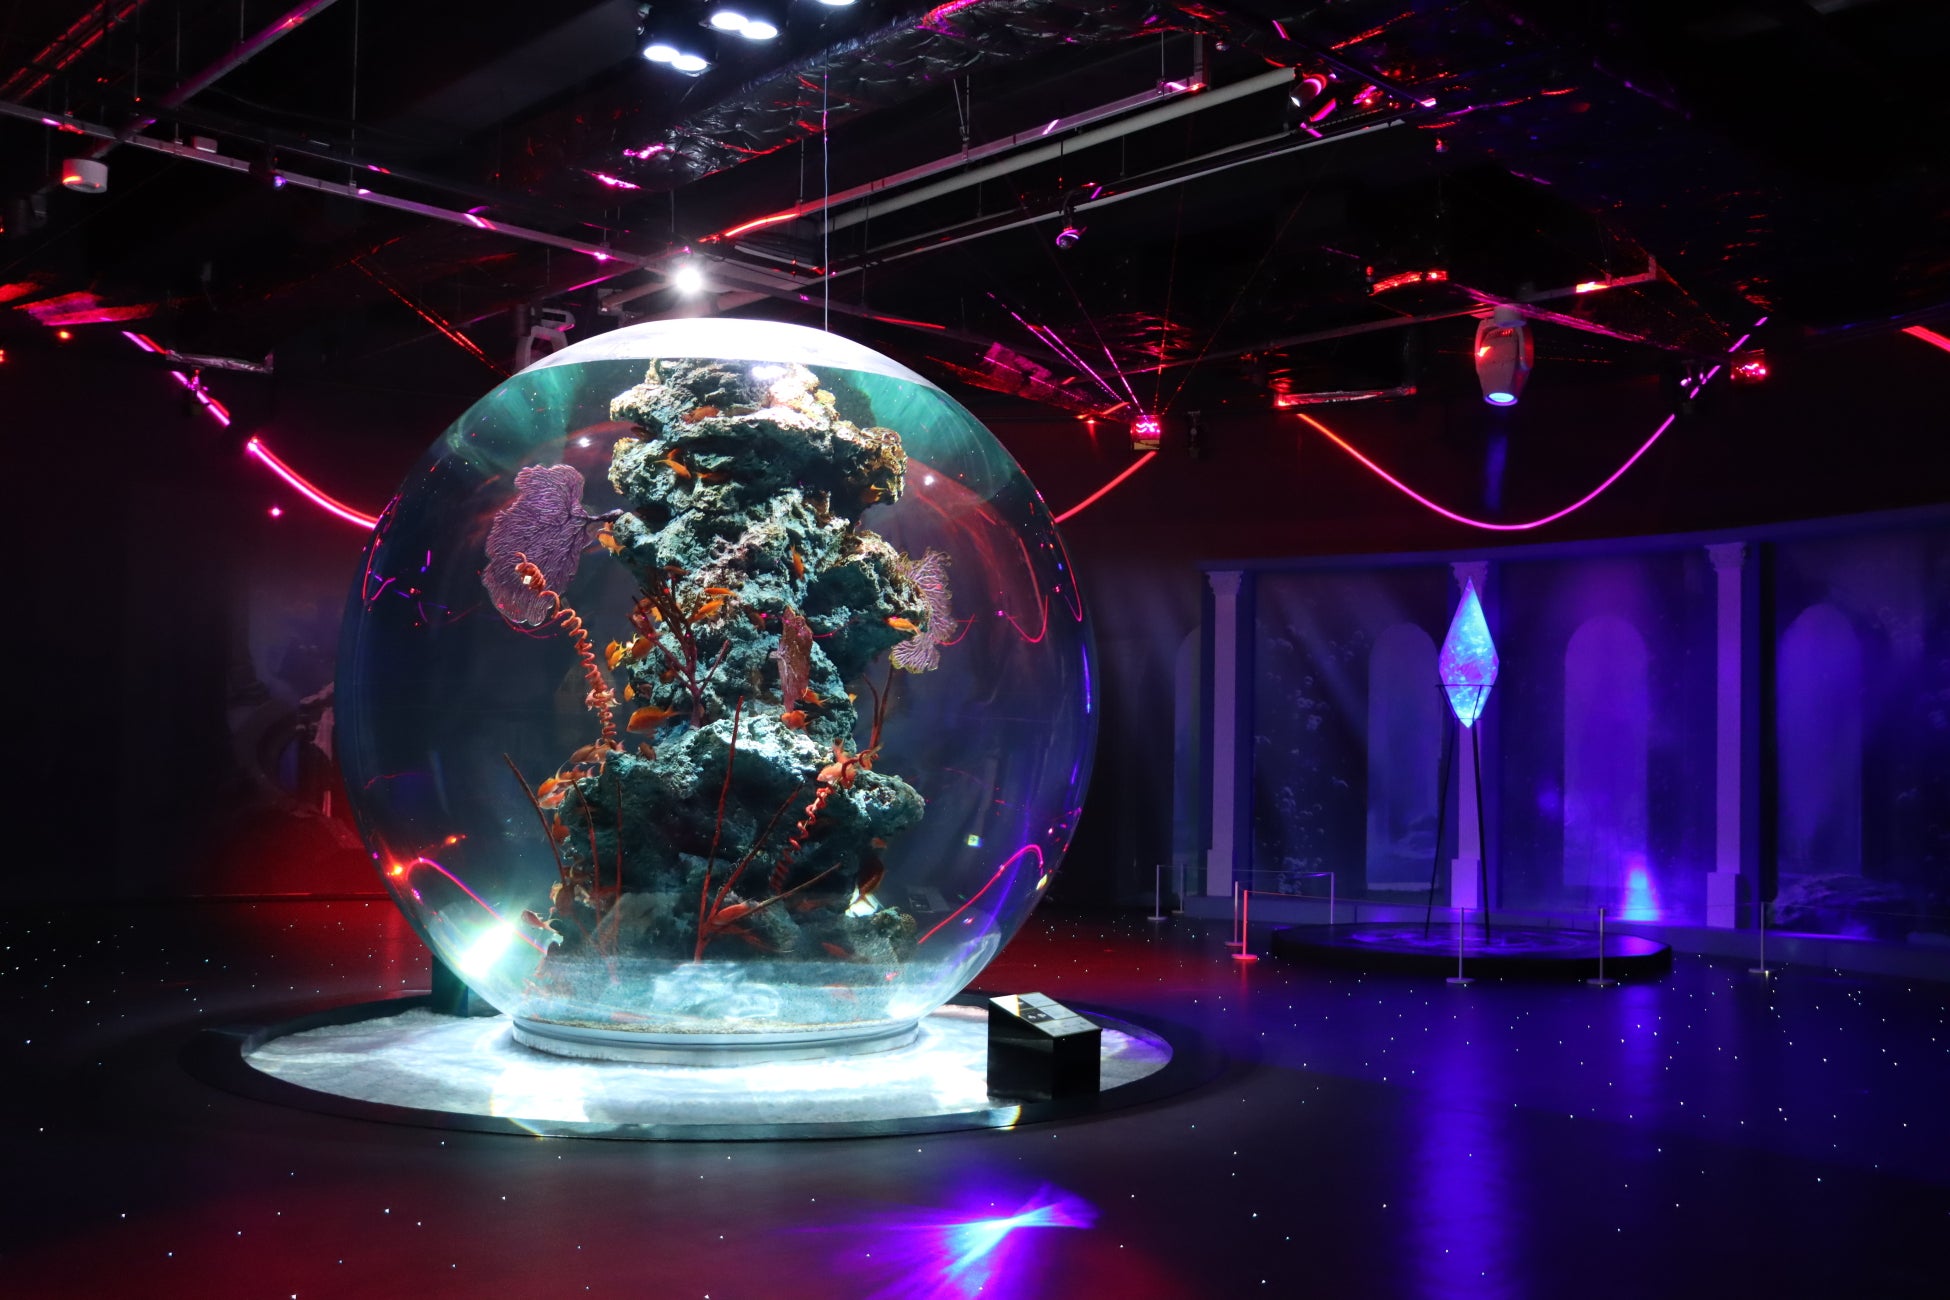 人気スマホゲームFFBE「破滅の幻獣」の世界が神戸の水族館アトアに！『クリスタル・プラネット -海底のファンタジーアクアリウム-』が開催初日を迎えました！